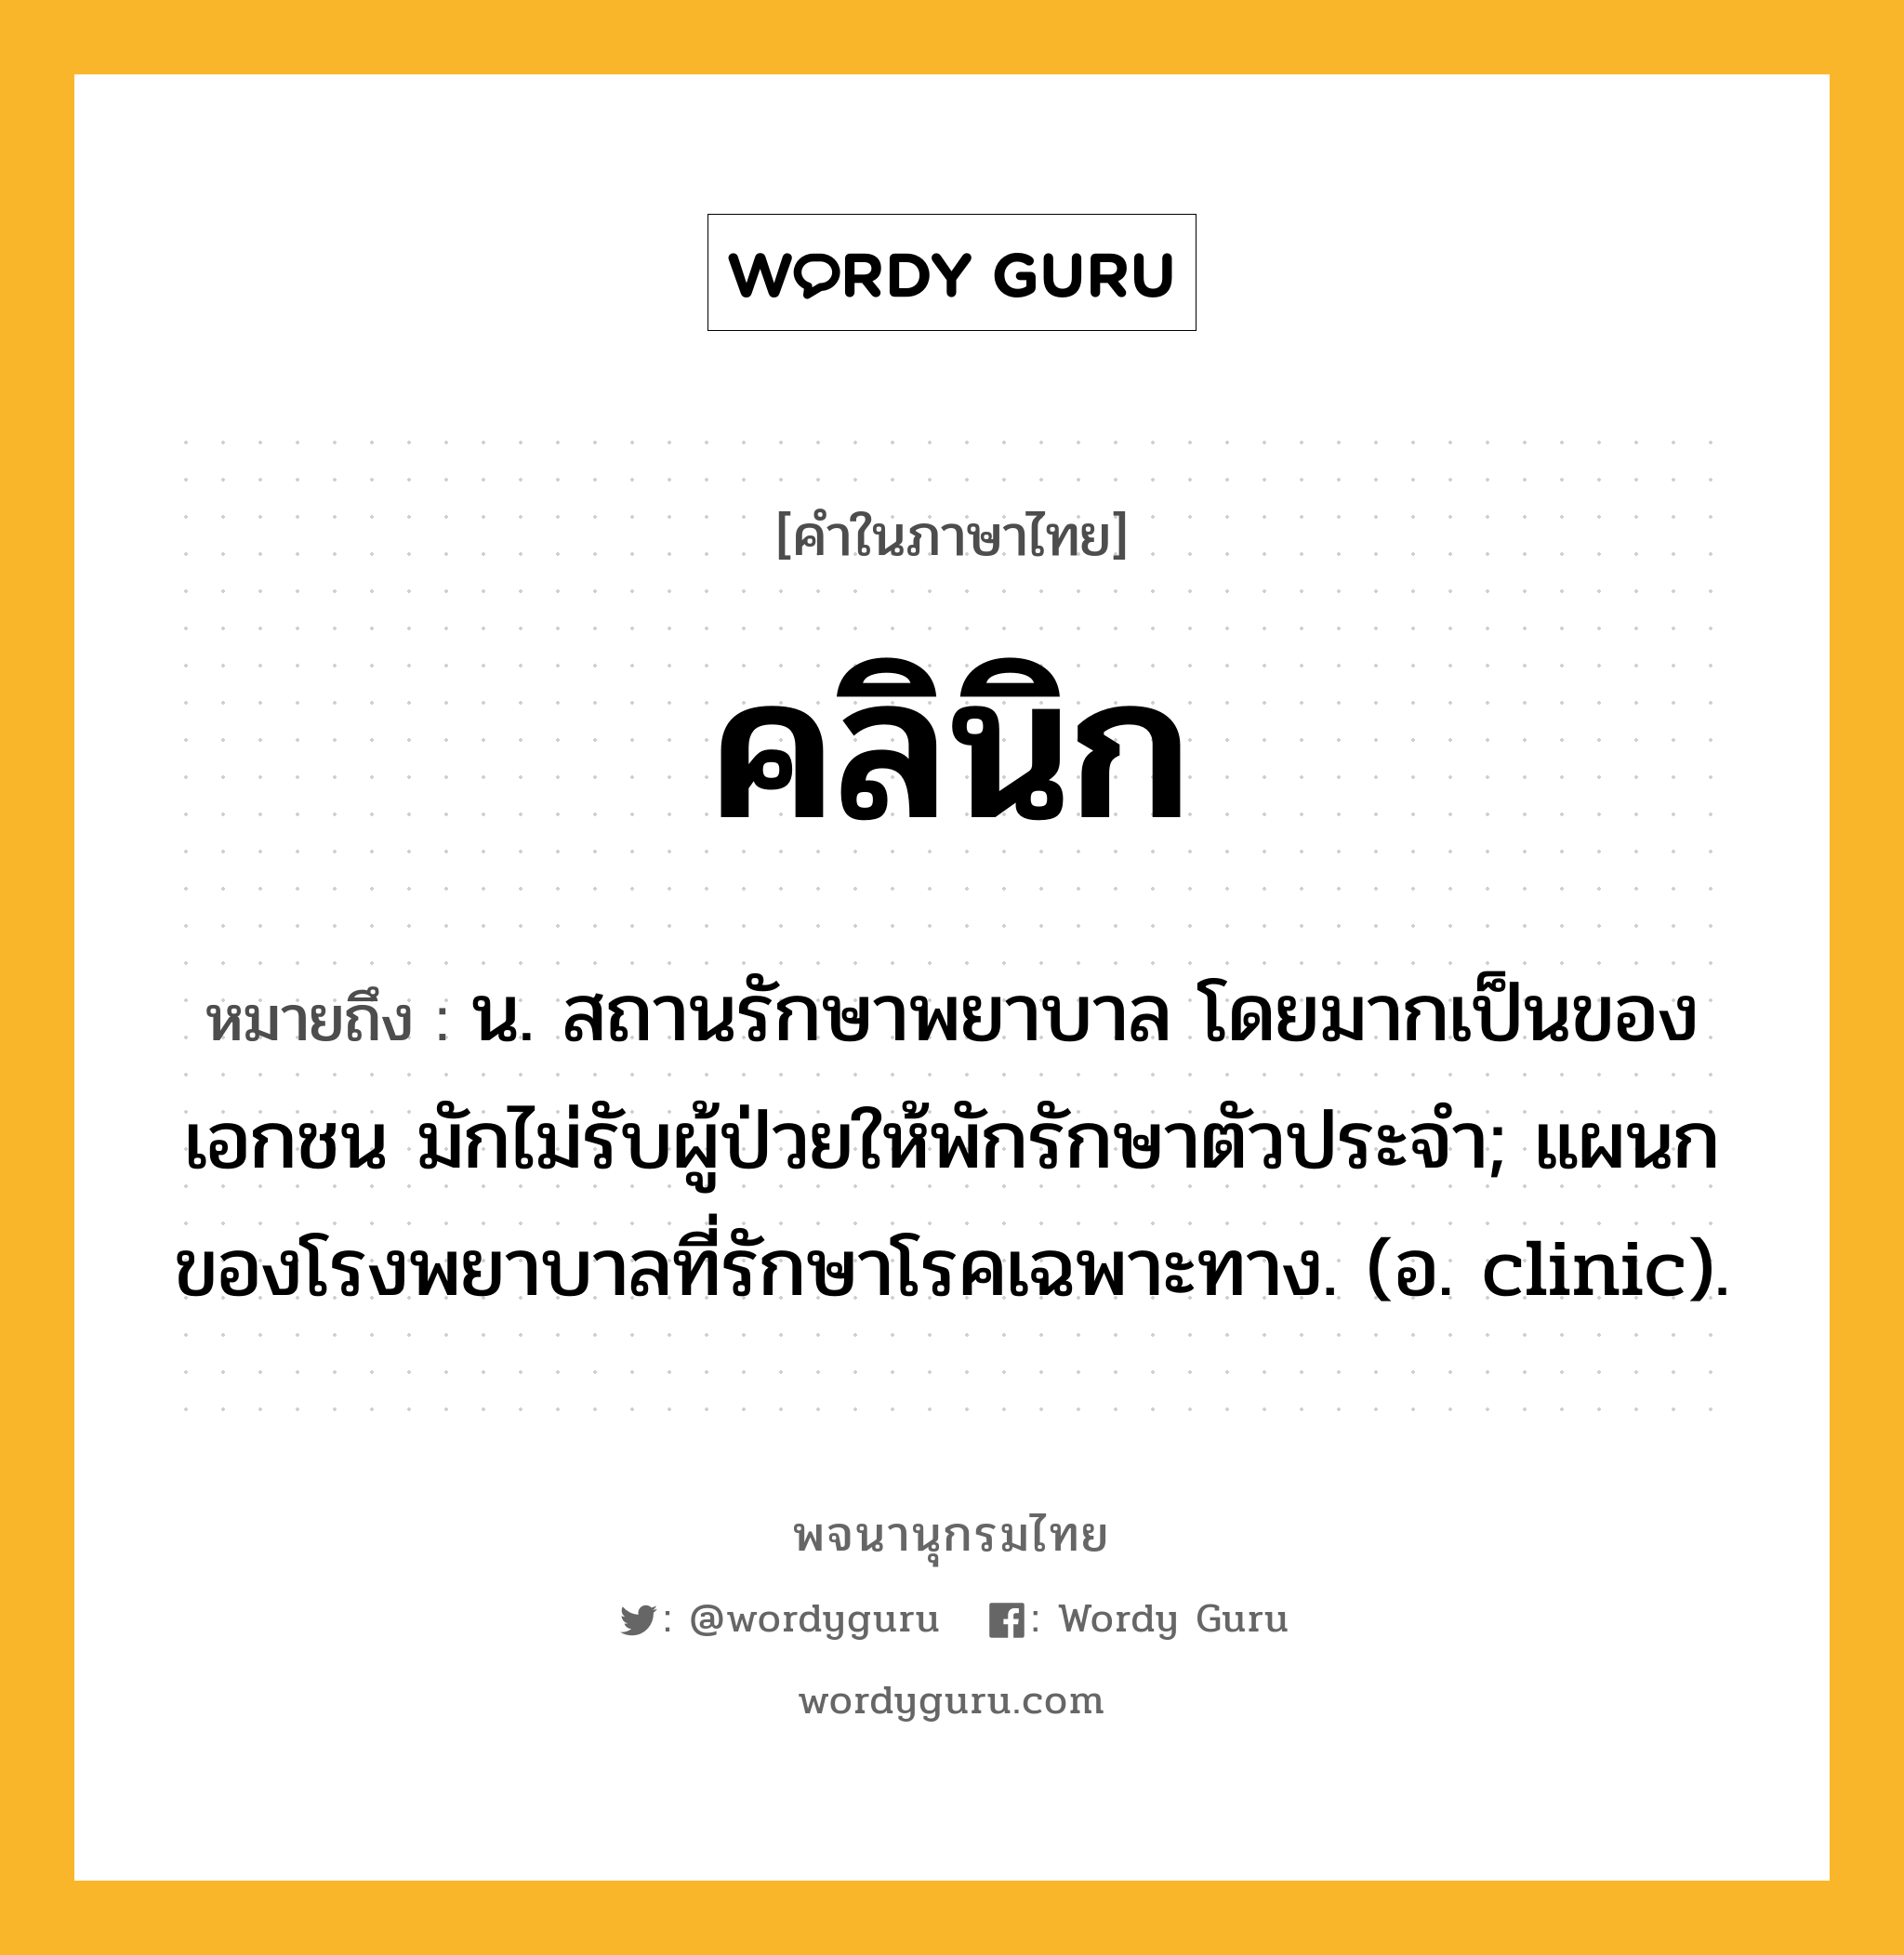 คลินิก ความหมาย หมายถึงอะไร?, คำในภาษาไทย คลินิก หมายถึง น. สถานรักษาพยาบาล โดยมากเป็นของเอกชน มักไม่รับผู้ป่วยให้พักรักษาตัวประจํา; แผนกของโรงพยาบาลที่รักษาโรคเฉพาะทาง. (อ. clinic).